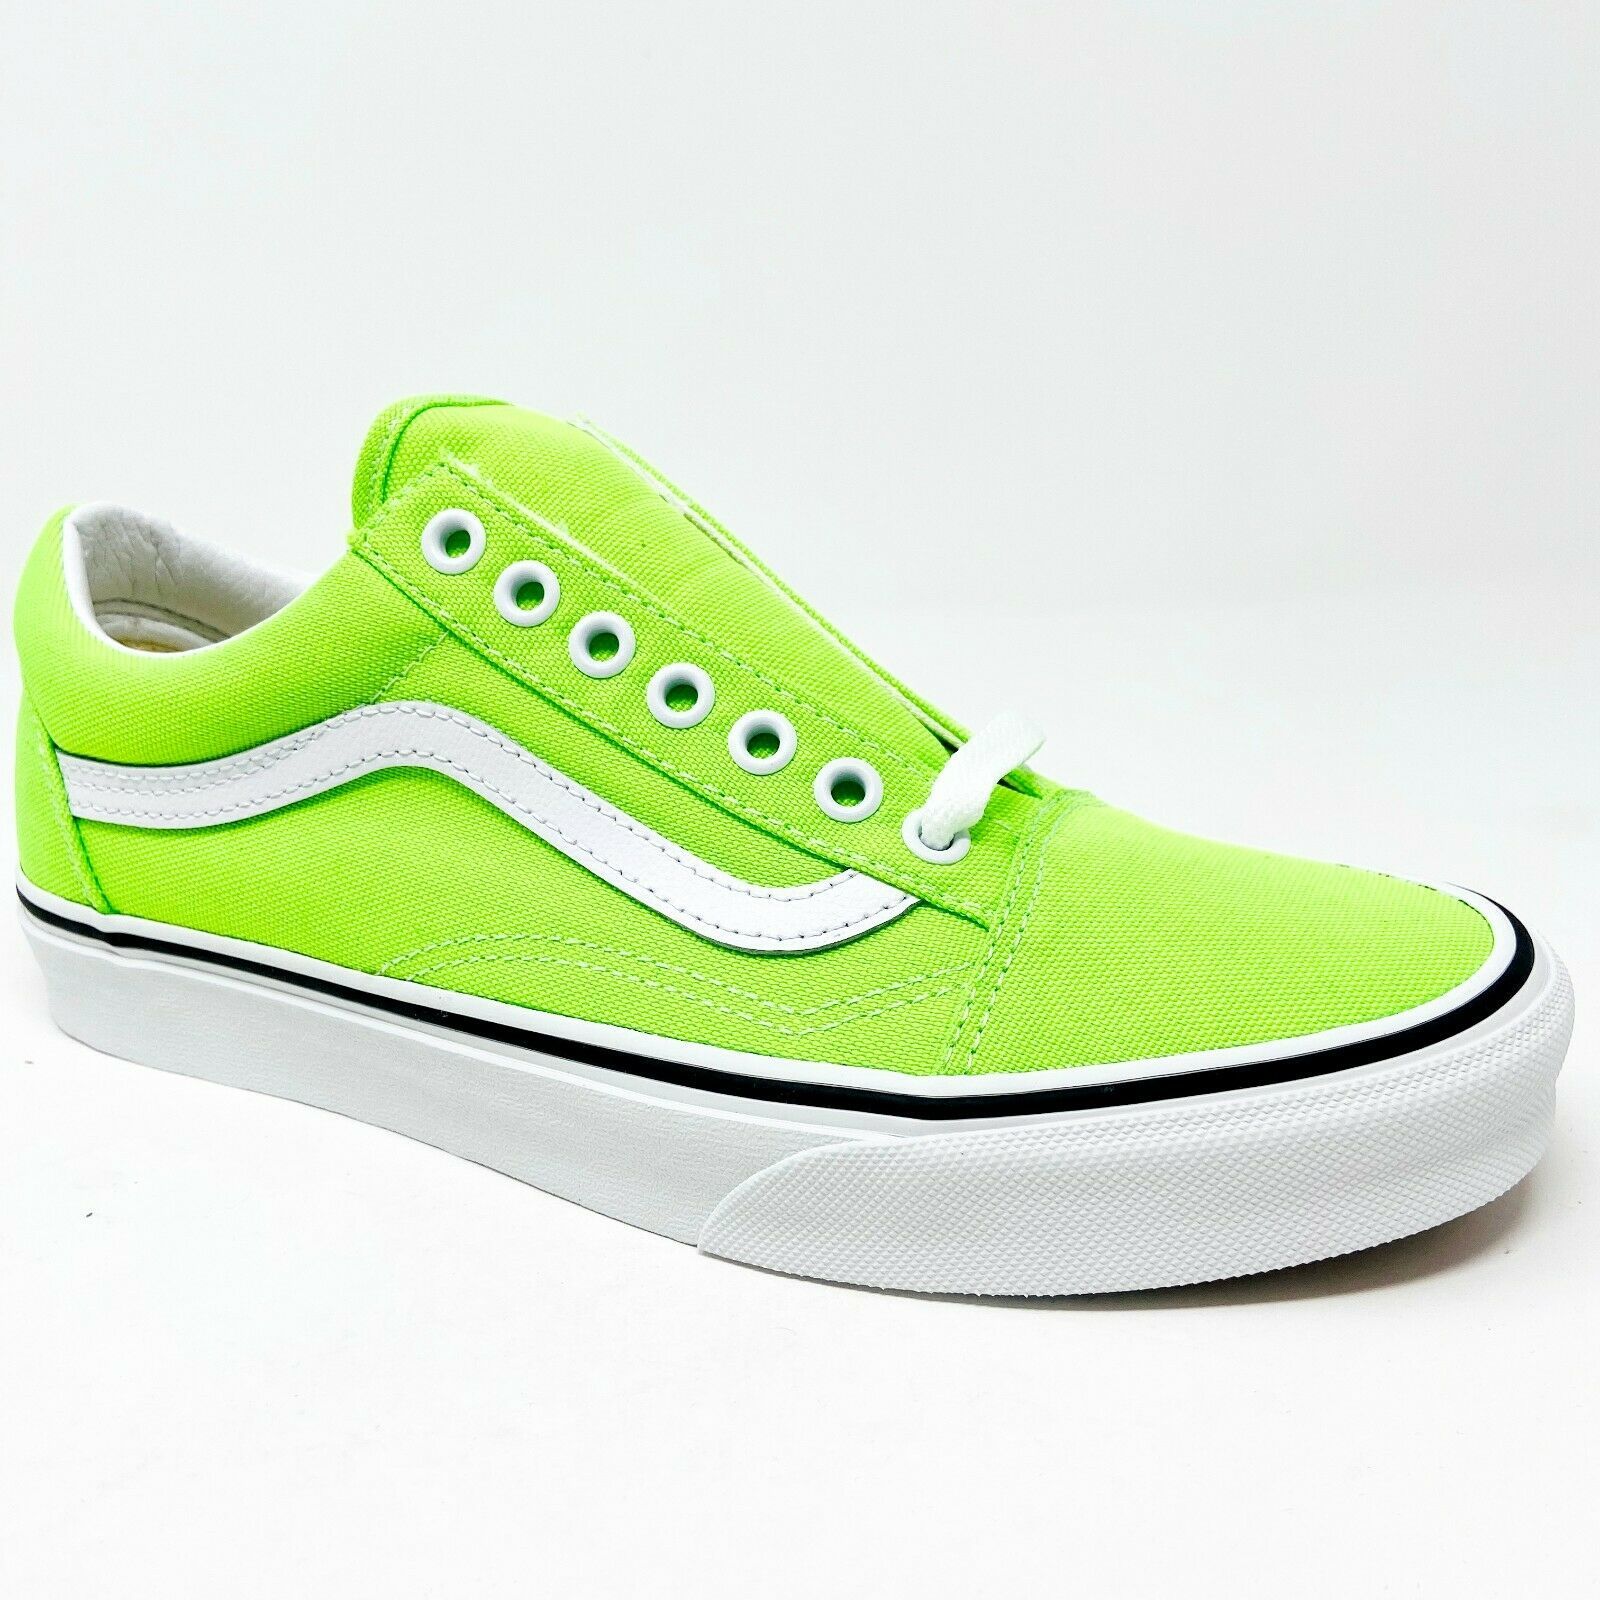 Vans Old Skool (Neon) Gecko Green True White Classic Womens Sneakers